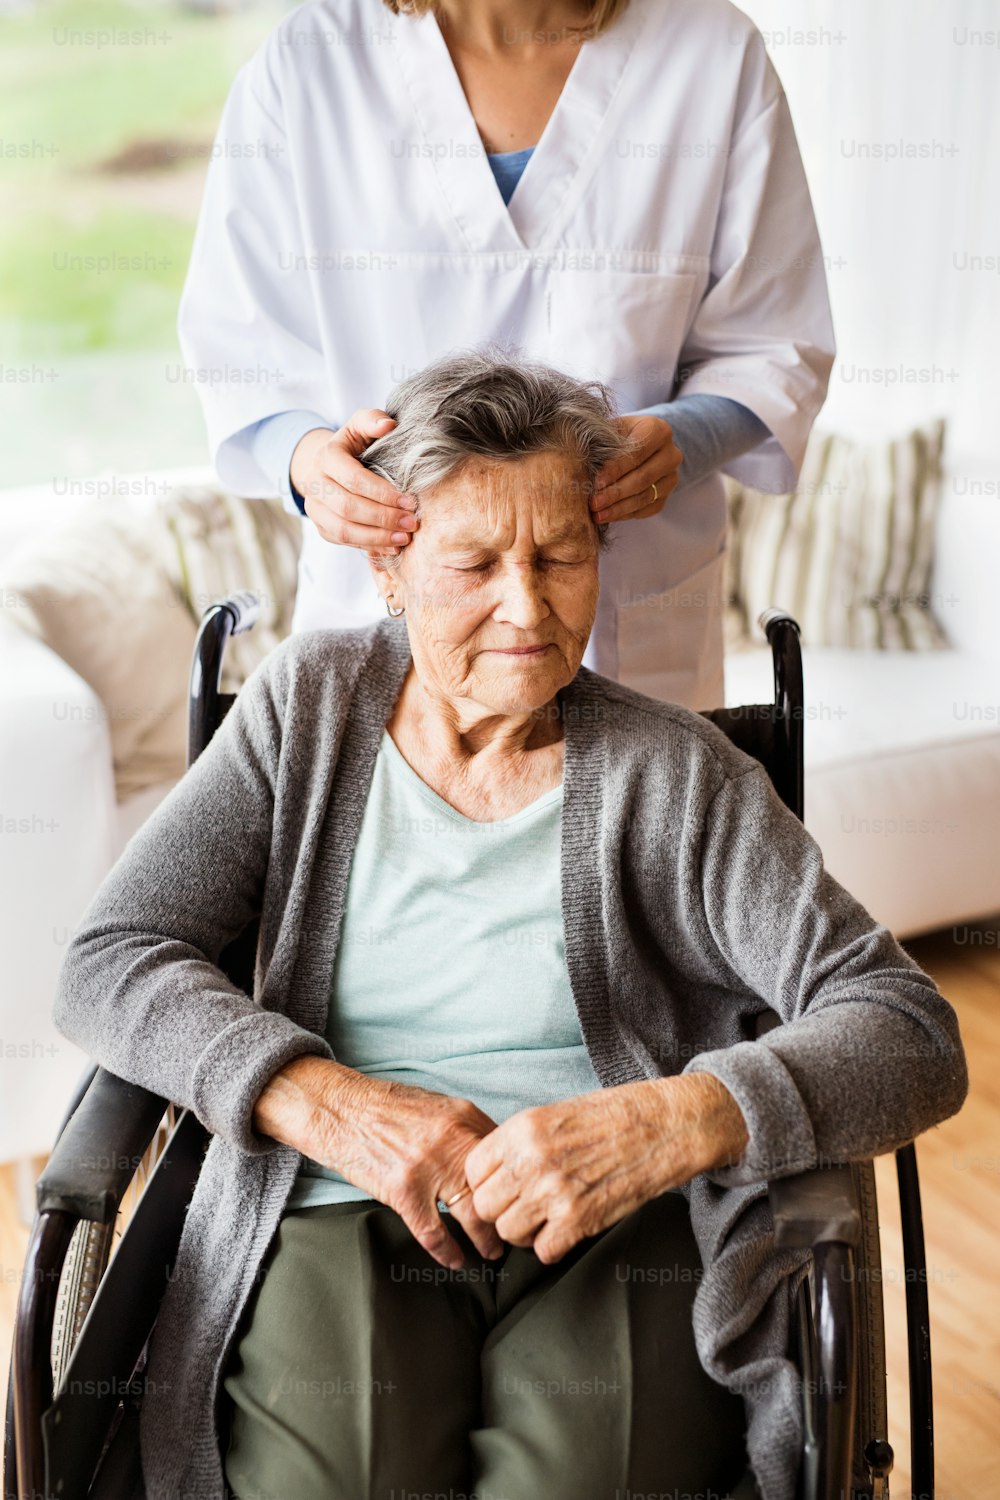 Visiteur de santé et une femme âgée lors d’une visite à domicile. Infirmière méconnaissable donnant un massage au temple de la femme.